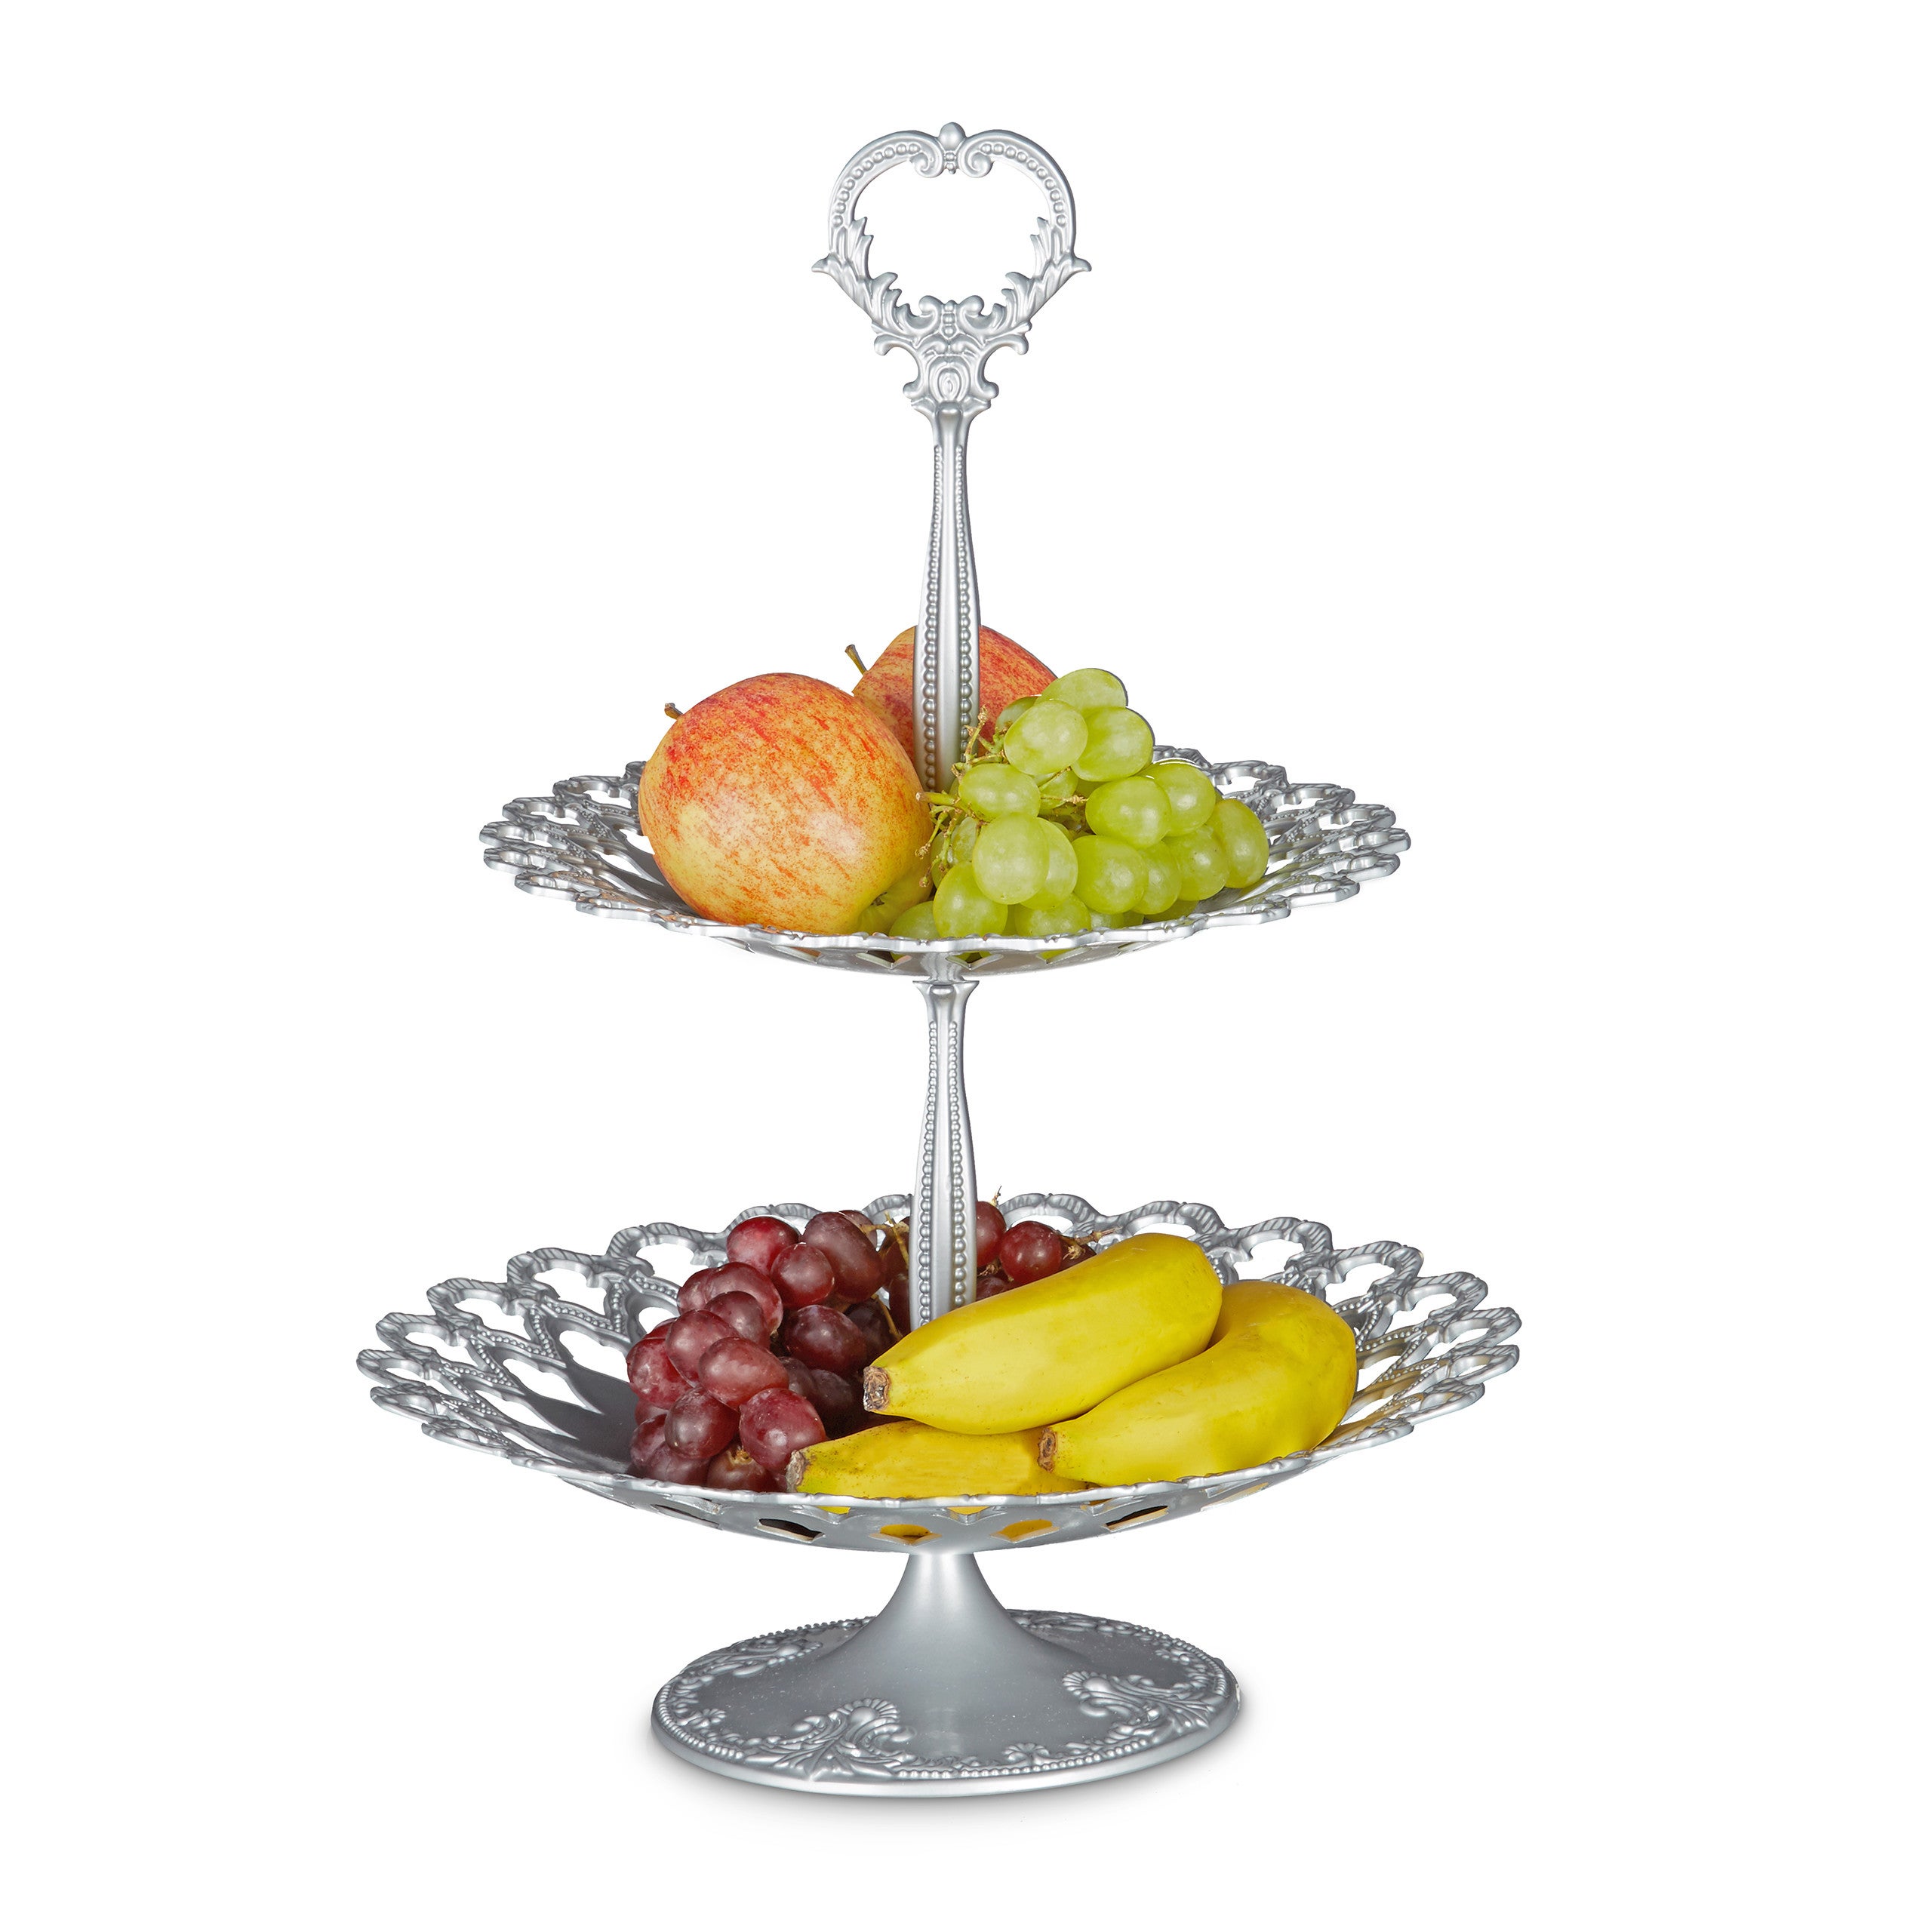 blanc 44 x 31 x 31 cm Relaxdays Serviteur à gâteaux présentoir à fruits étagère en aluminium avec poignée 2 étages service fruit dessert amuse-gueule apéritif métal 